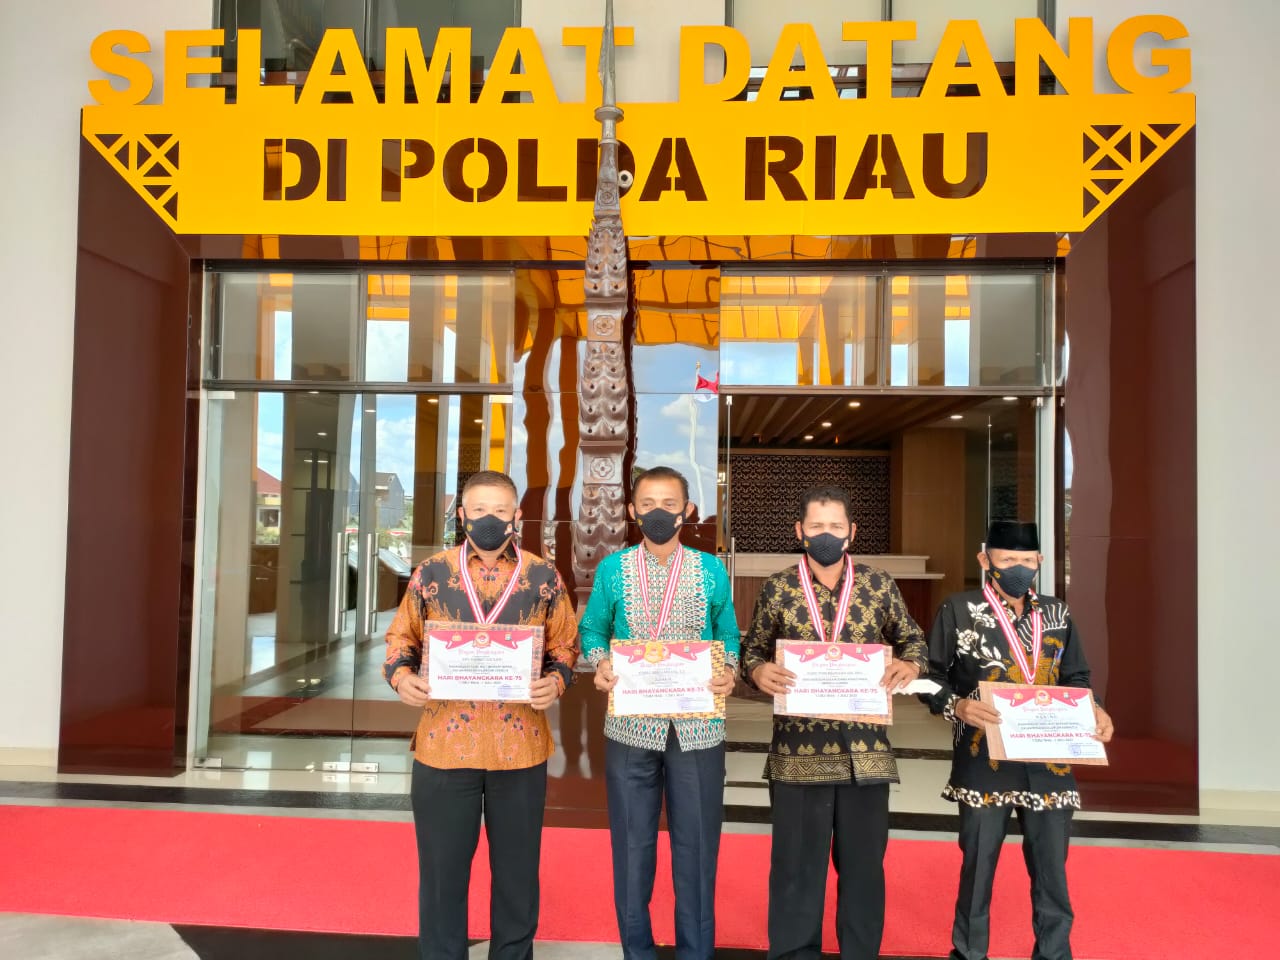 Empat Tokoh Masyarakat Inhil Sabet Penghargaan dari Polda Riau